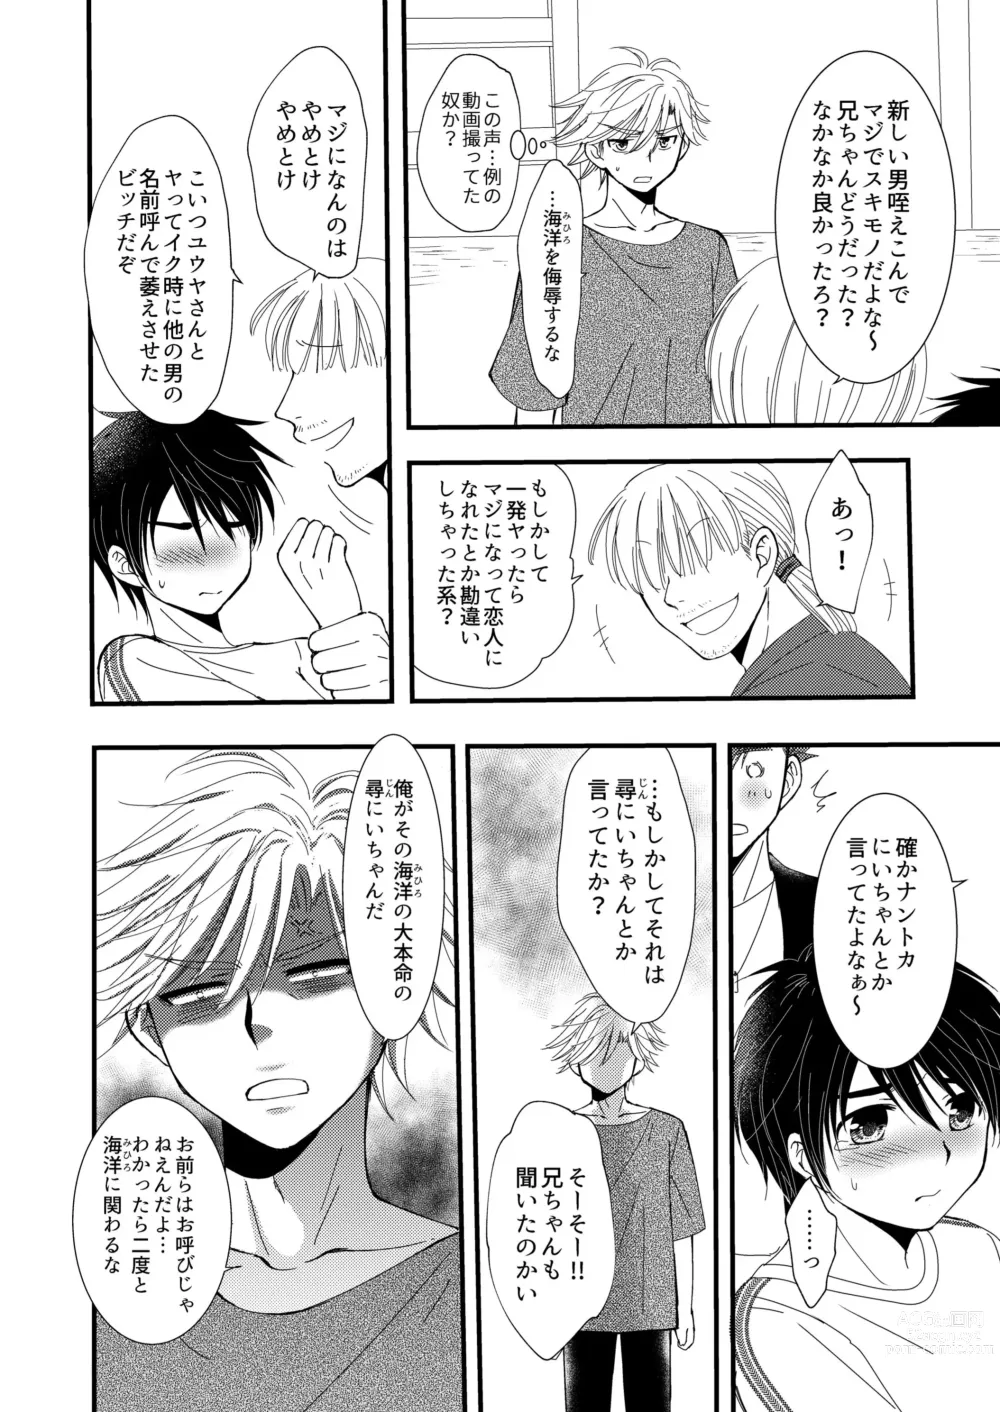 Page 42 of doujinshi Oitekita Umi